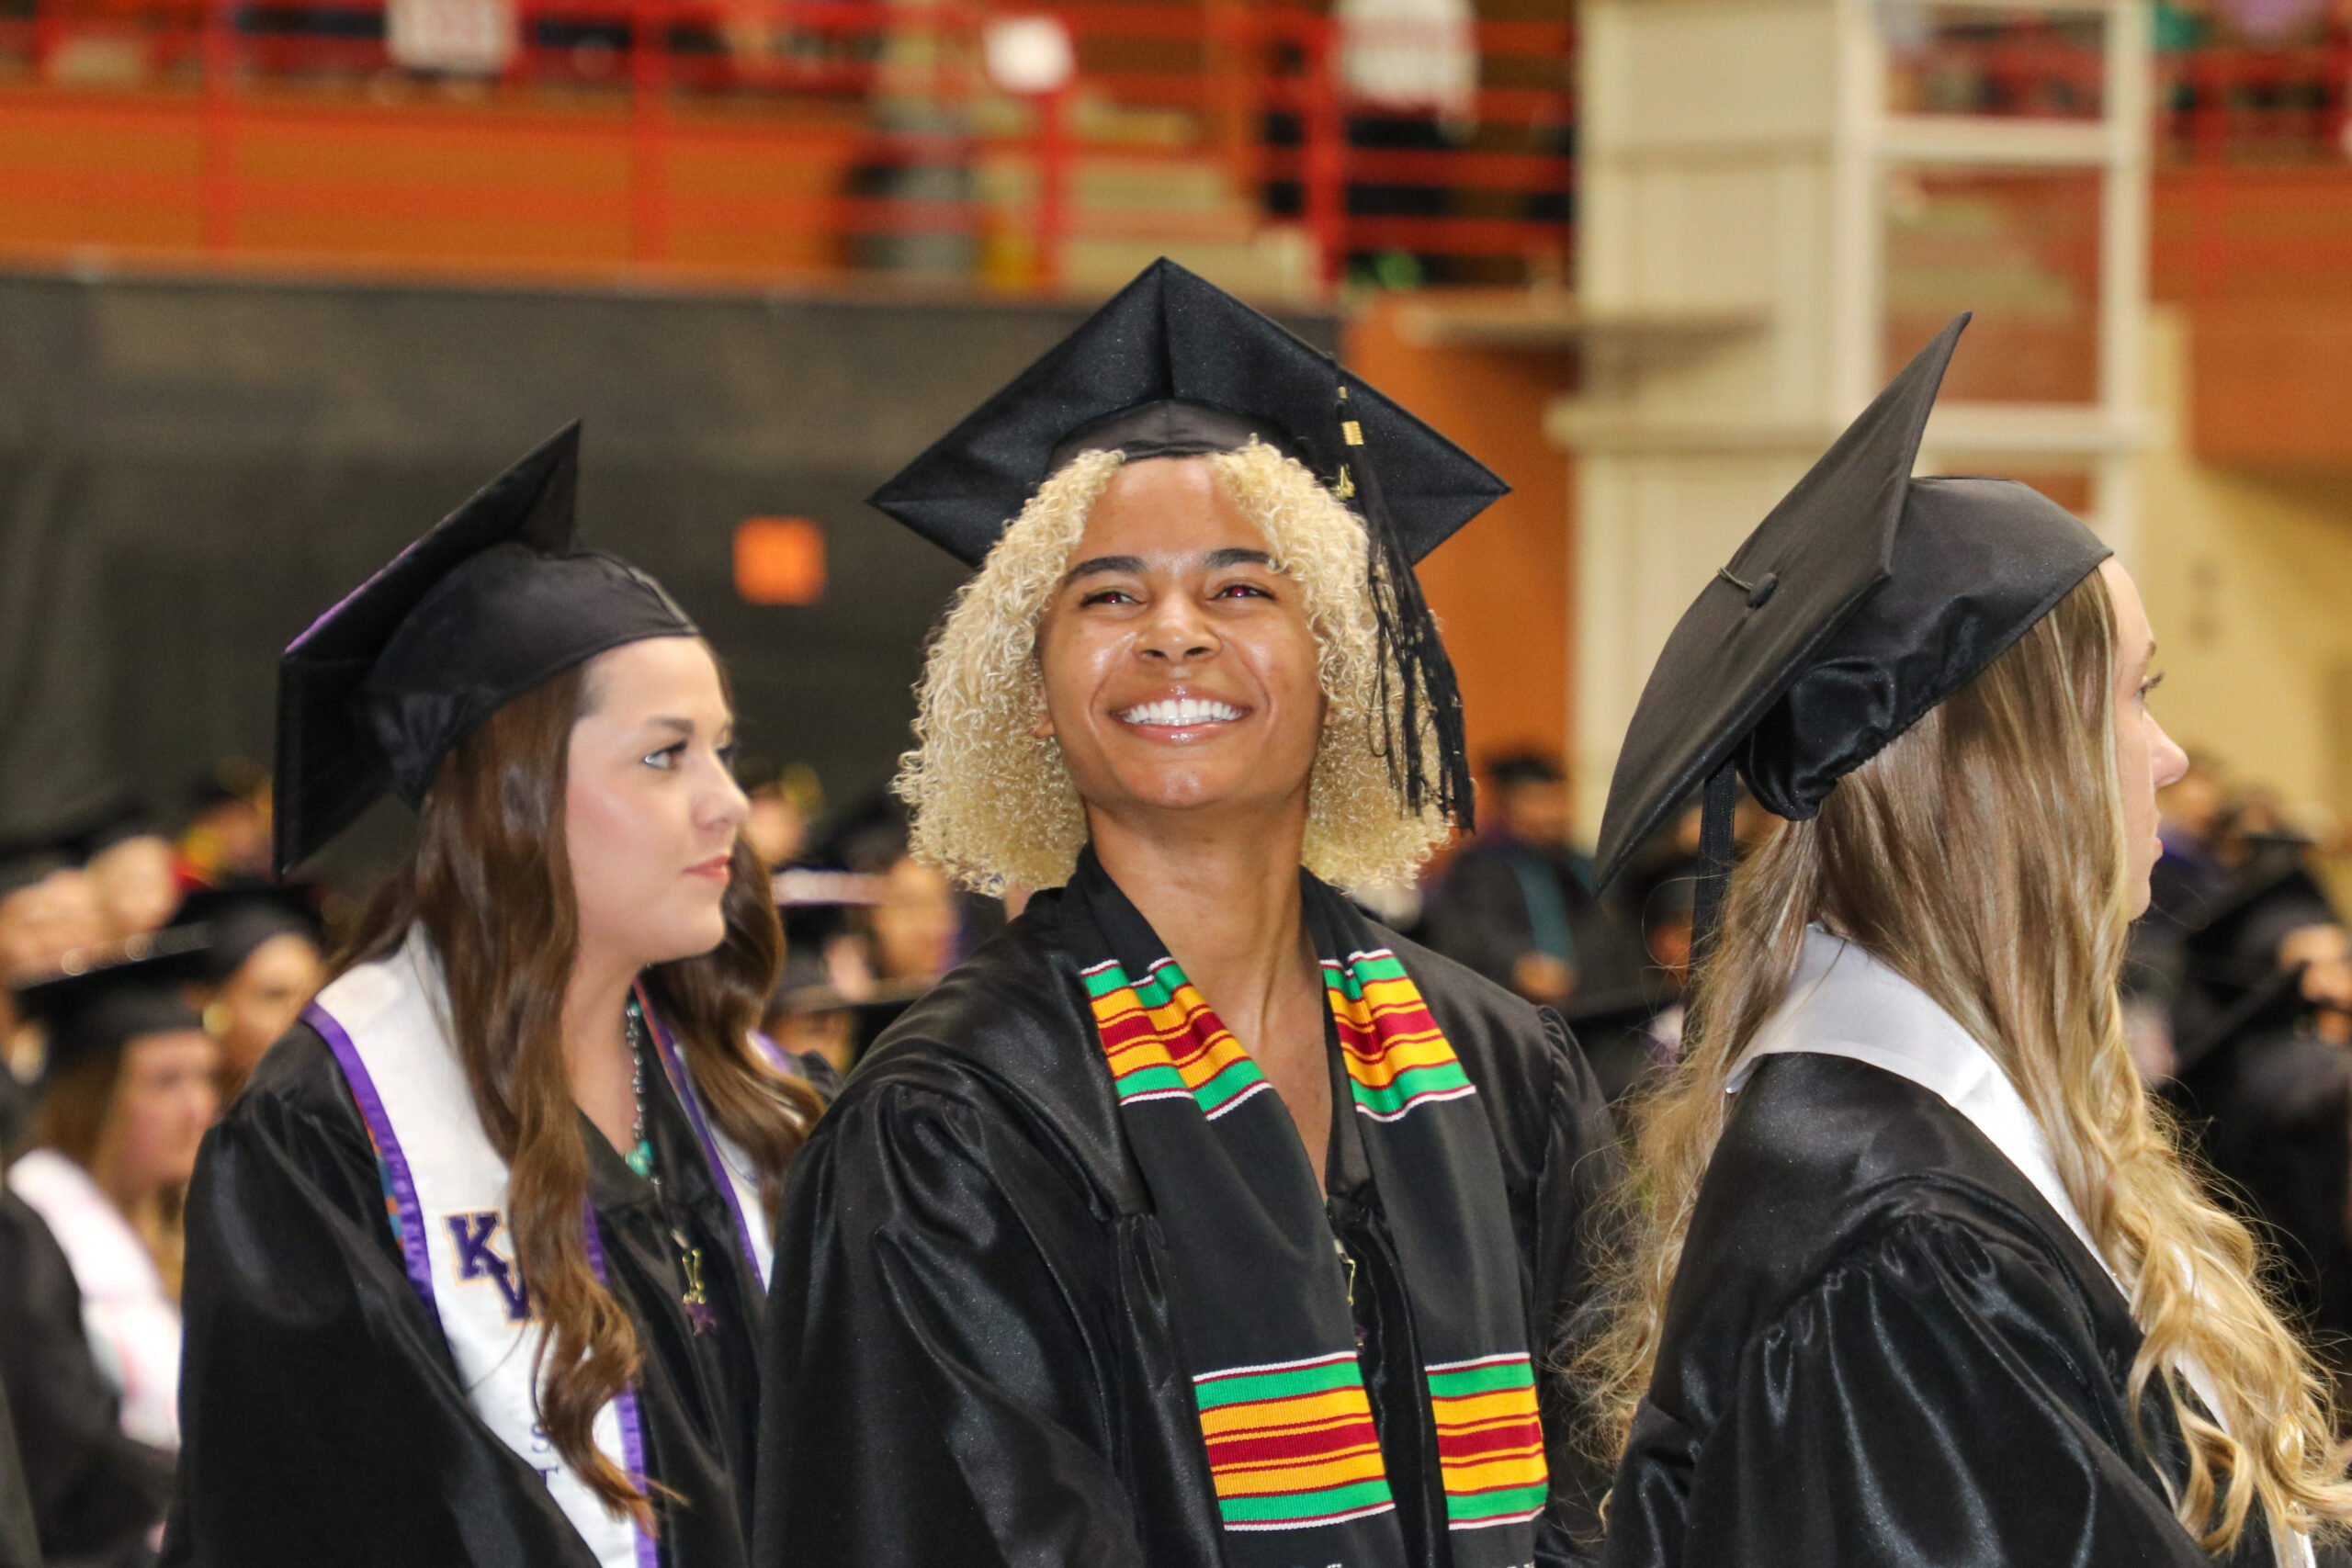 Woman in graduation attire smiling